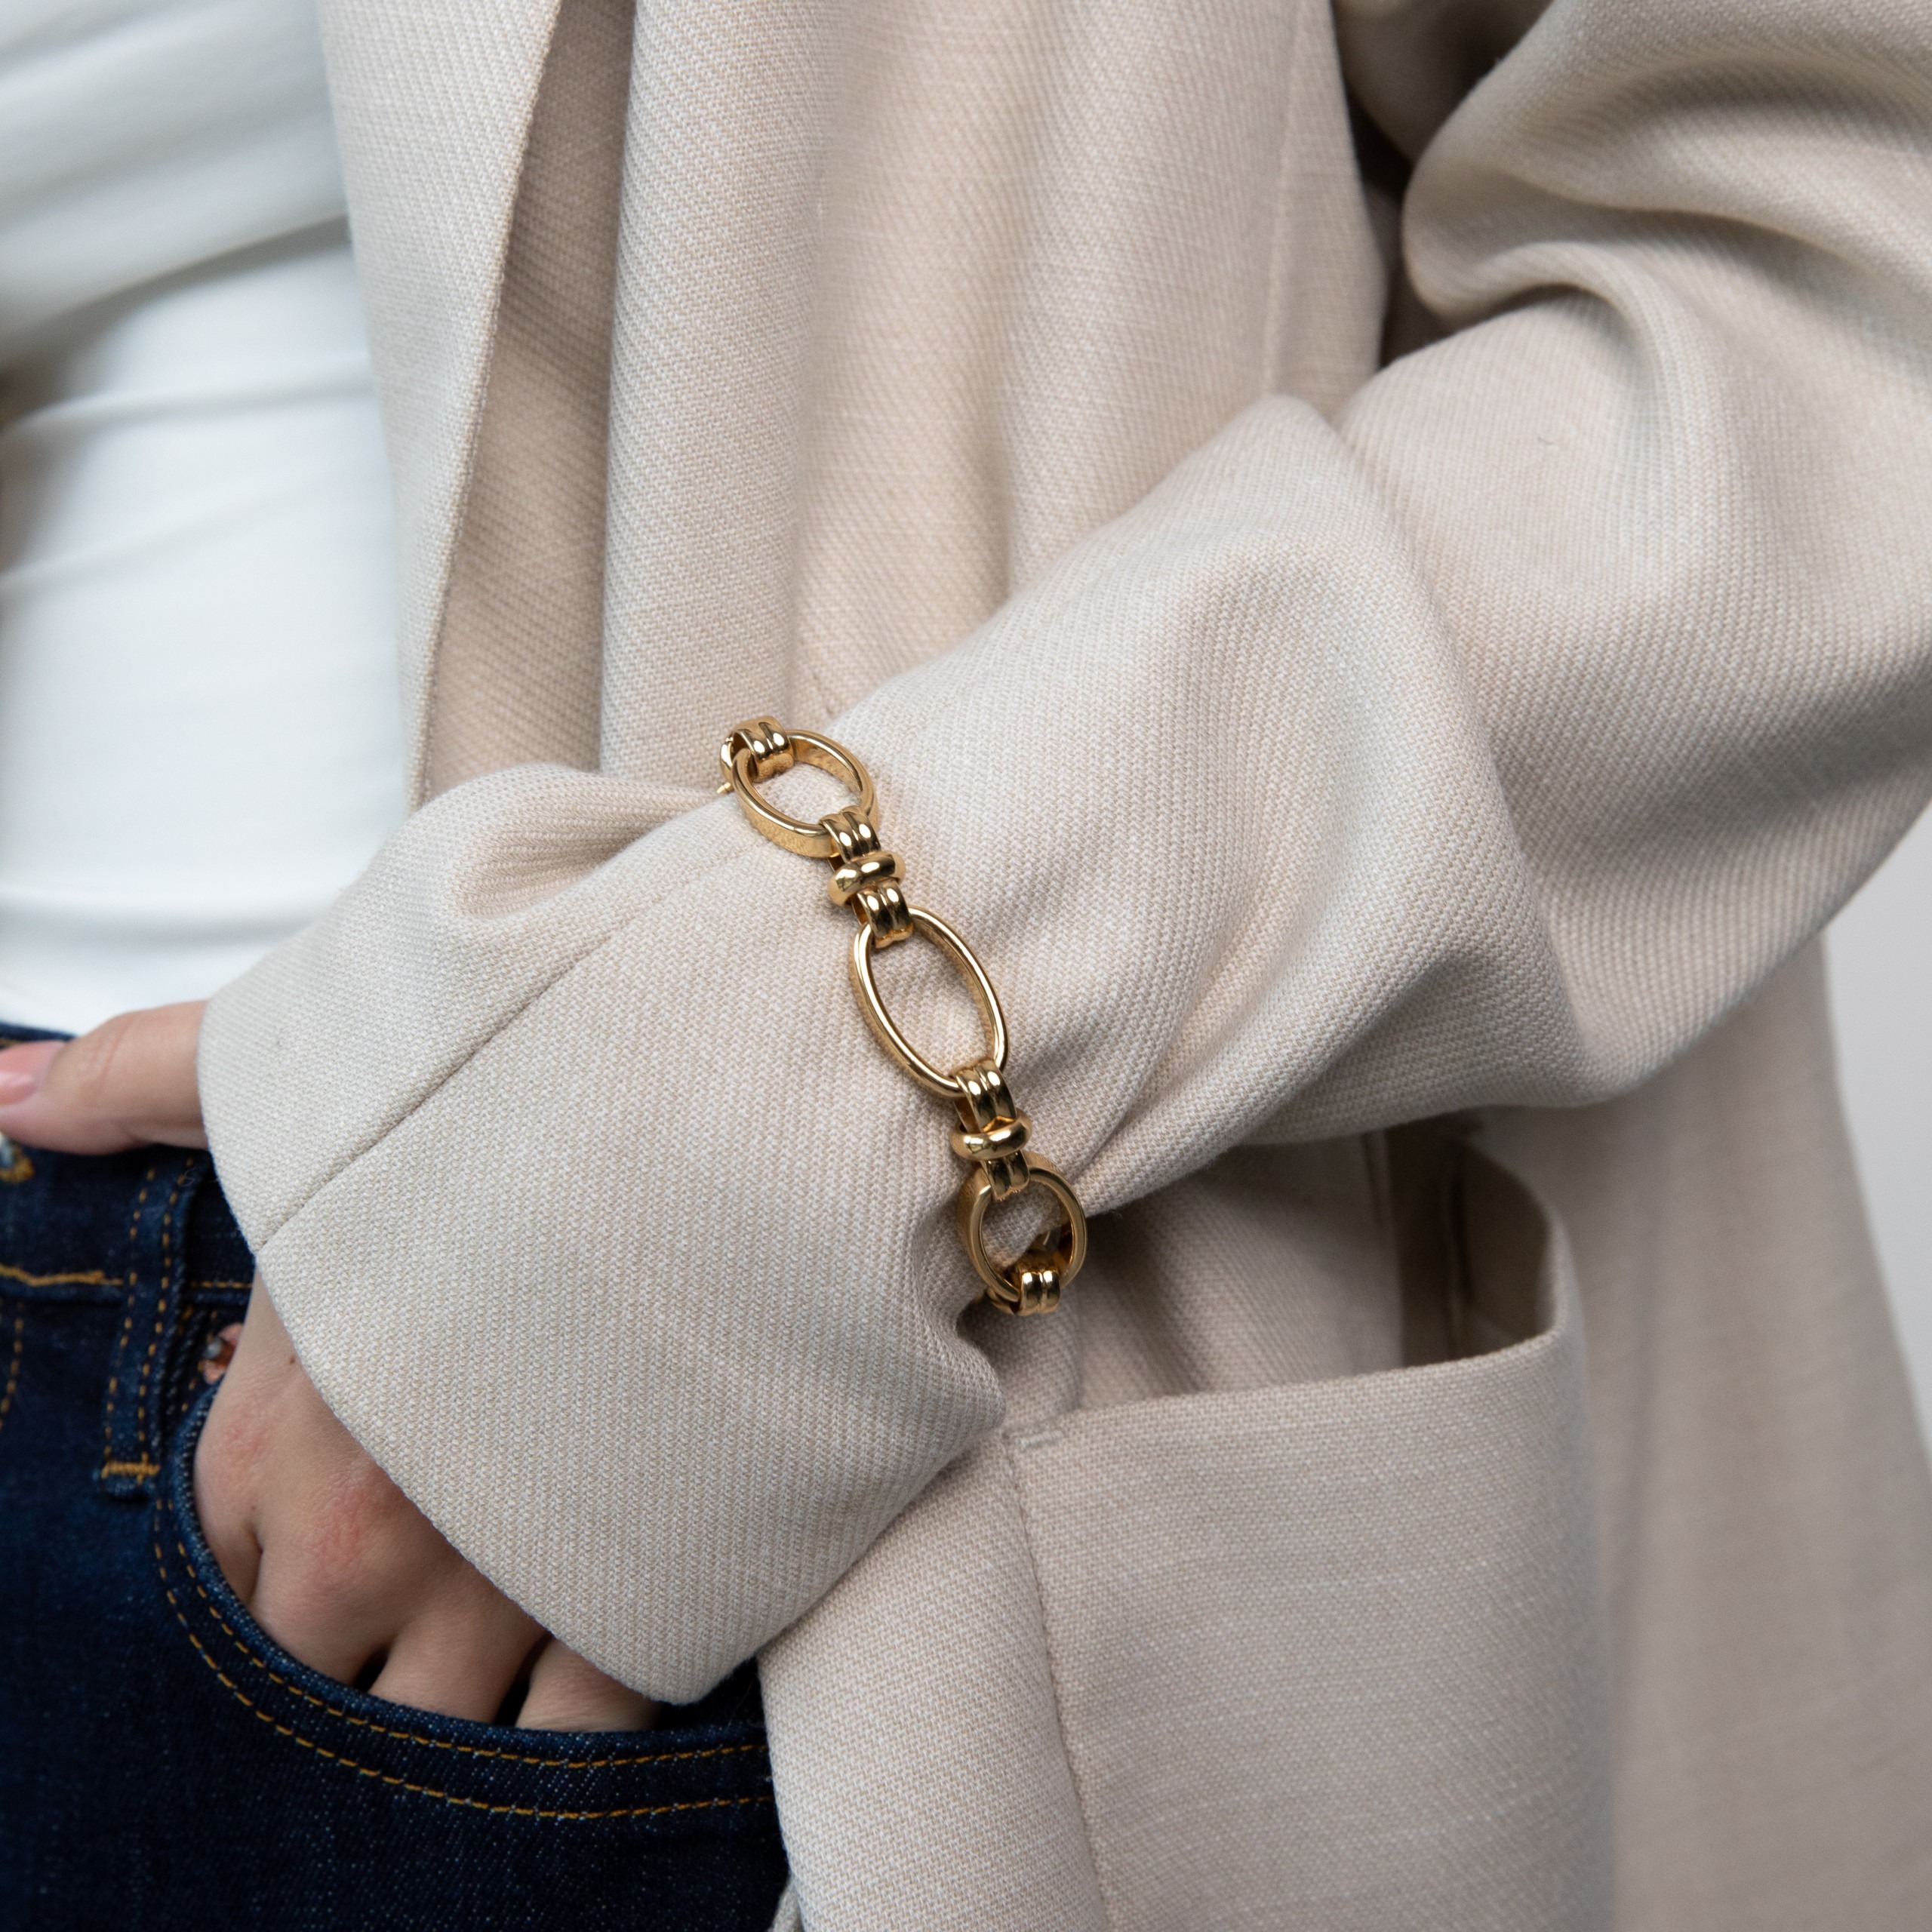 Sienna chain gold bracelet